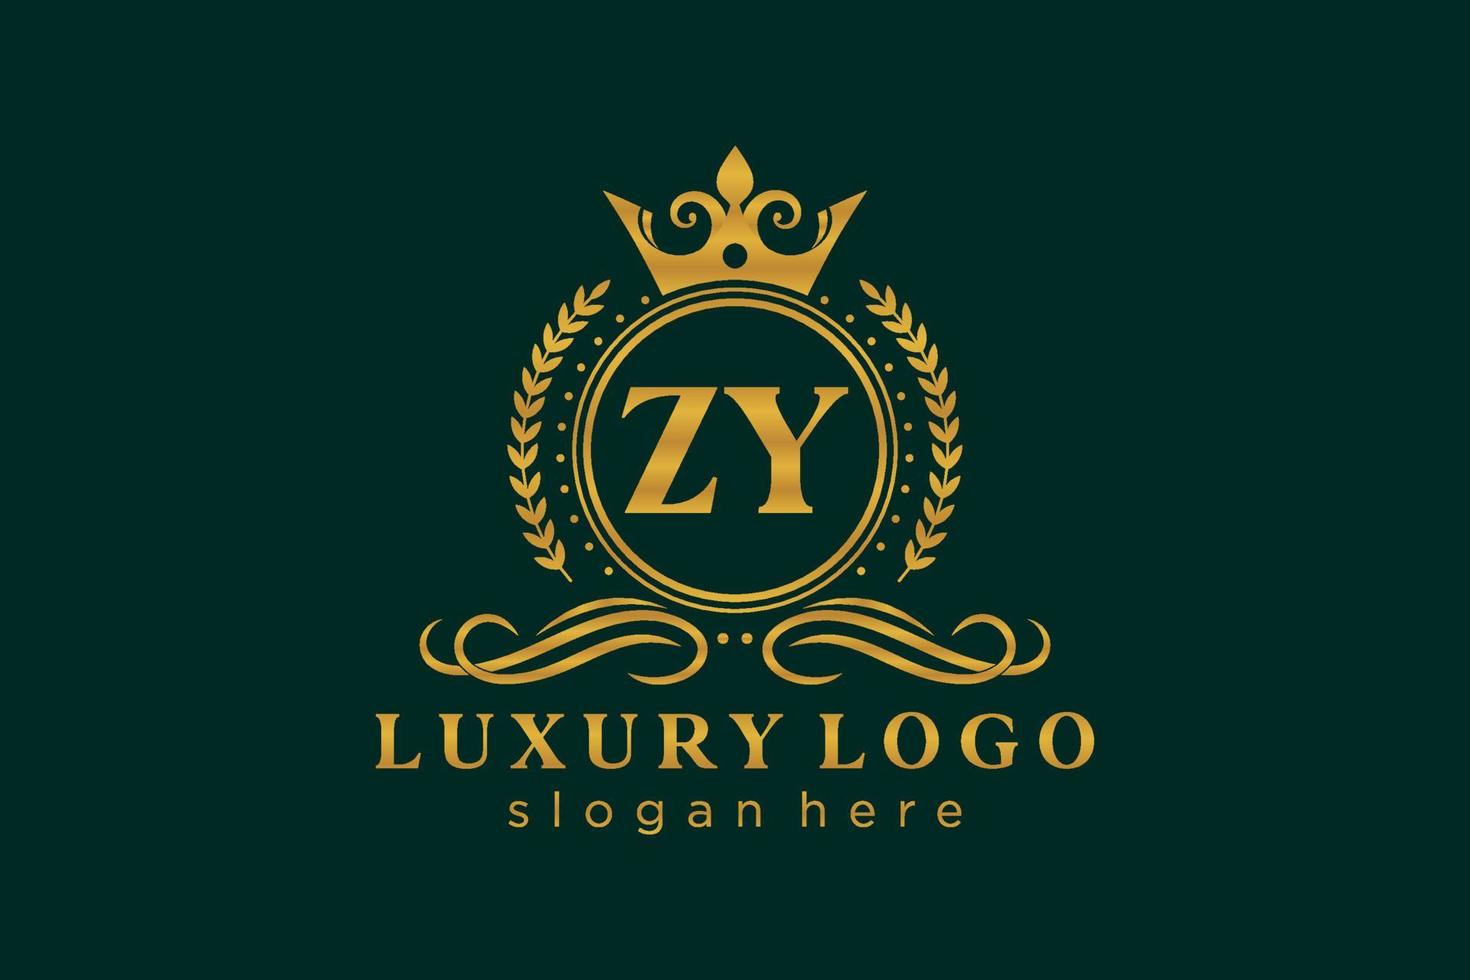 Royal Luxury Logo-Vorlage mit anfänglichem zy-Buchstaben in Vektorgrafiken für Restaurant, Lizenzgebühren, Boutique, Café, Hotel, Heraldik, Schmuck, Mode und andere Vektorillustrationen. vektor